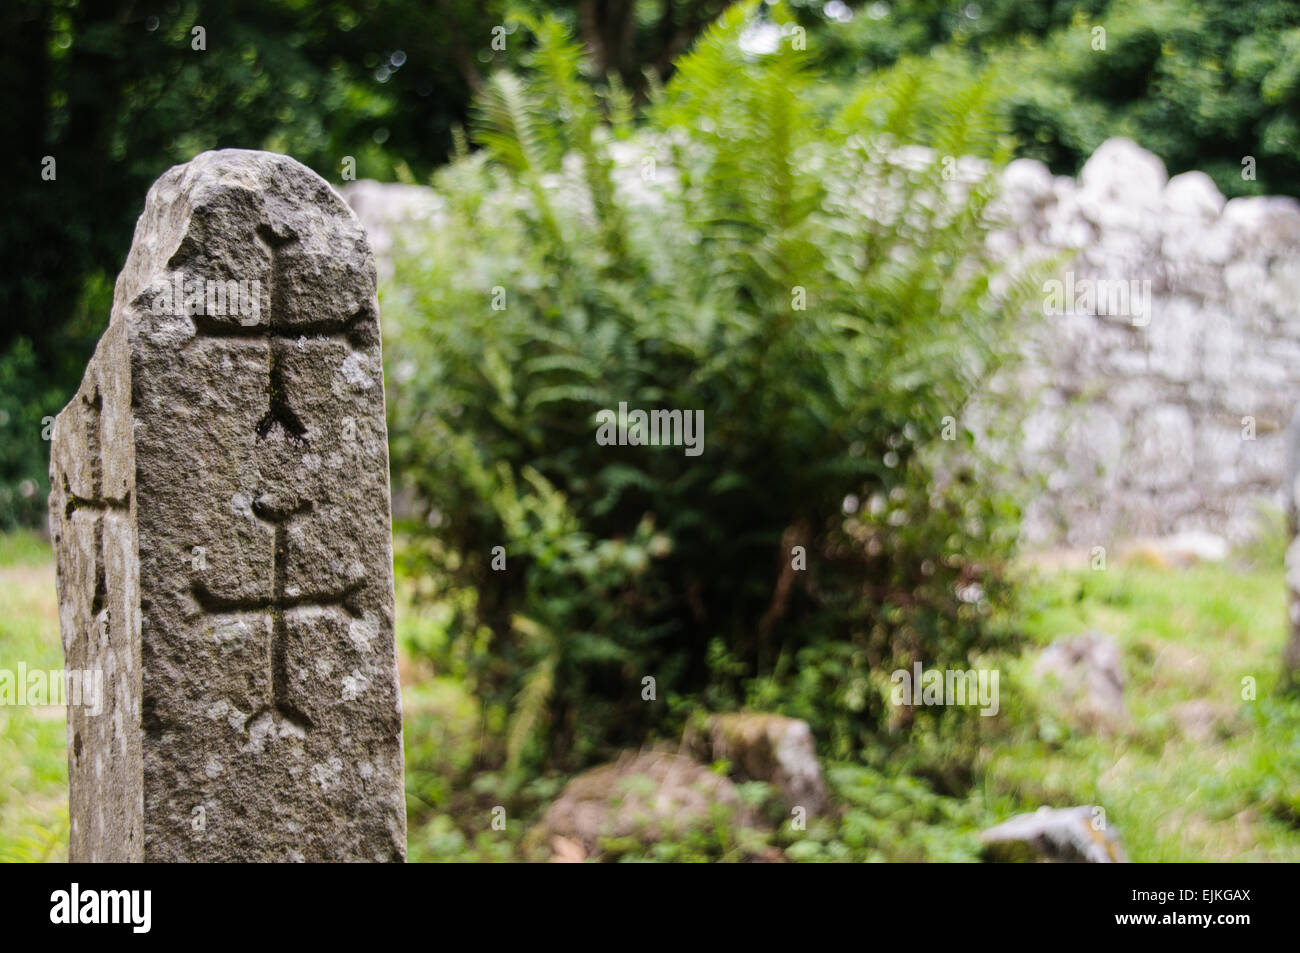 Lugnaedon Stone, die Grabstätte des Lugnaedon, Schwester von St. Patrick.  Dies ist angeblich die älteste christliche Inschrift außerhalb des Vatikans. Stockfoto